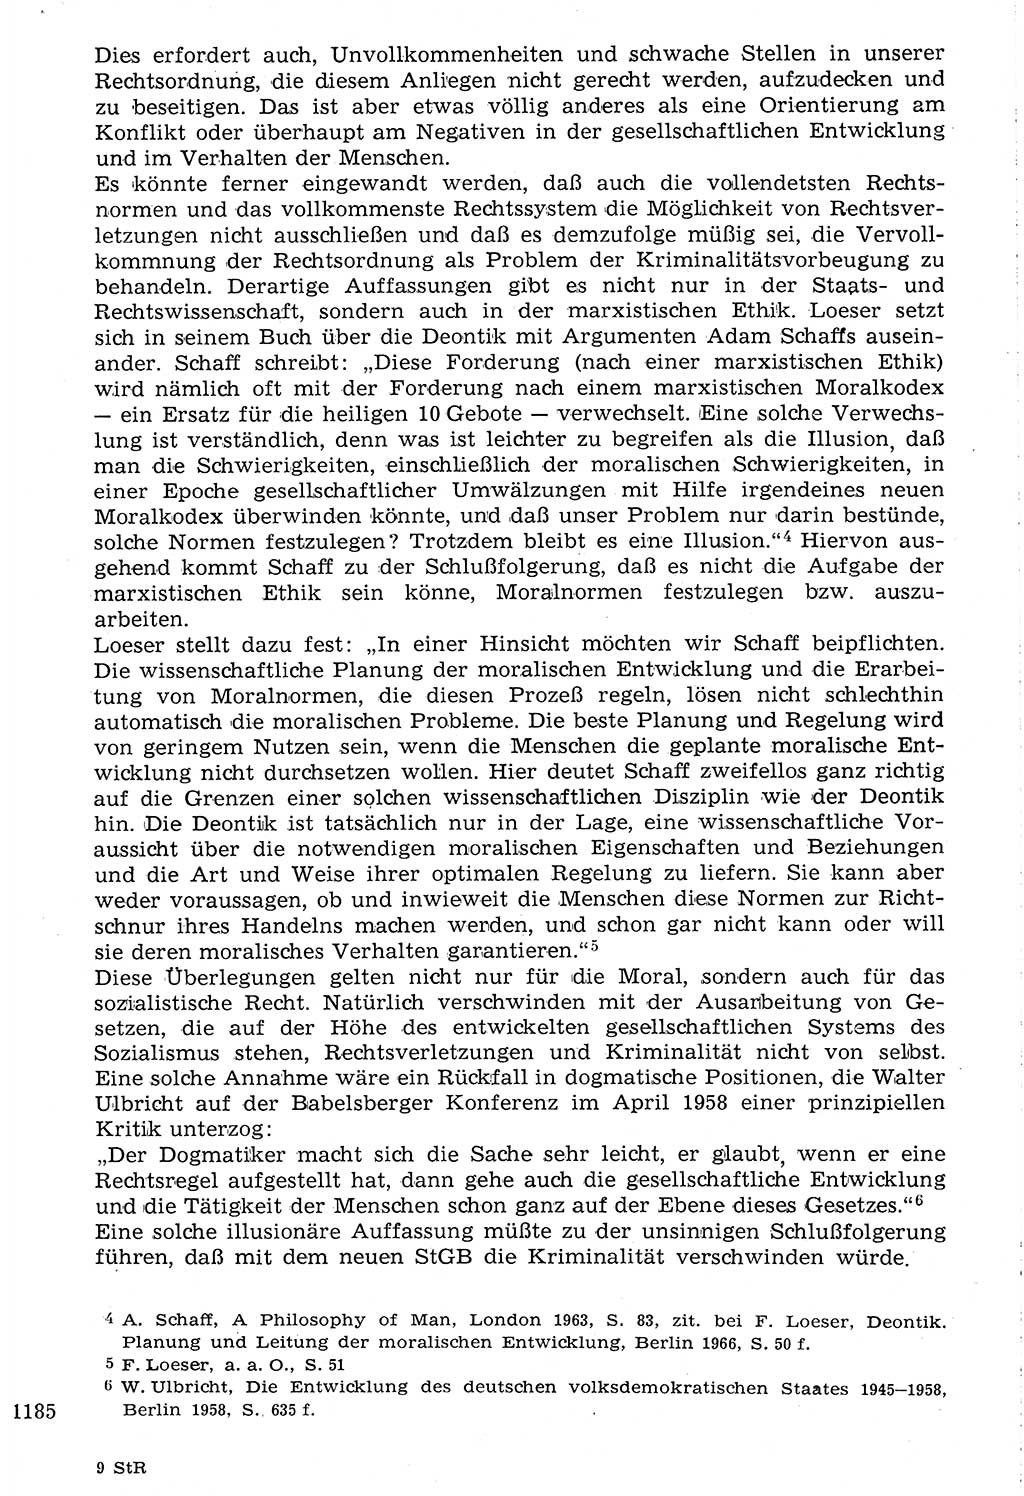 Staat und Recht (StuR), 17. Jahrgang [Deutsche Demokratische Republik (DDR)] 1968, Seite 1185 (StuR DDR 1968, S. 1185)